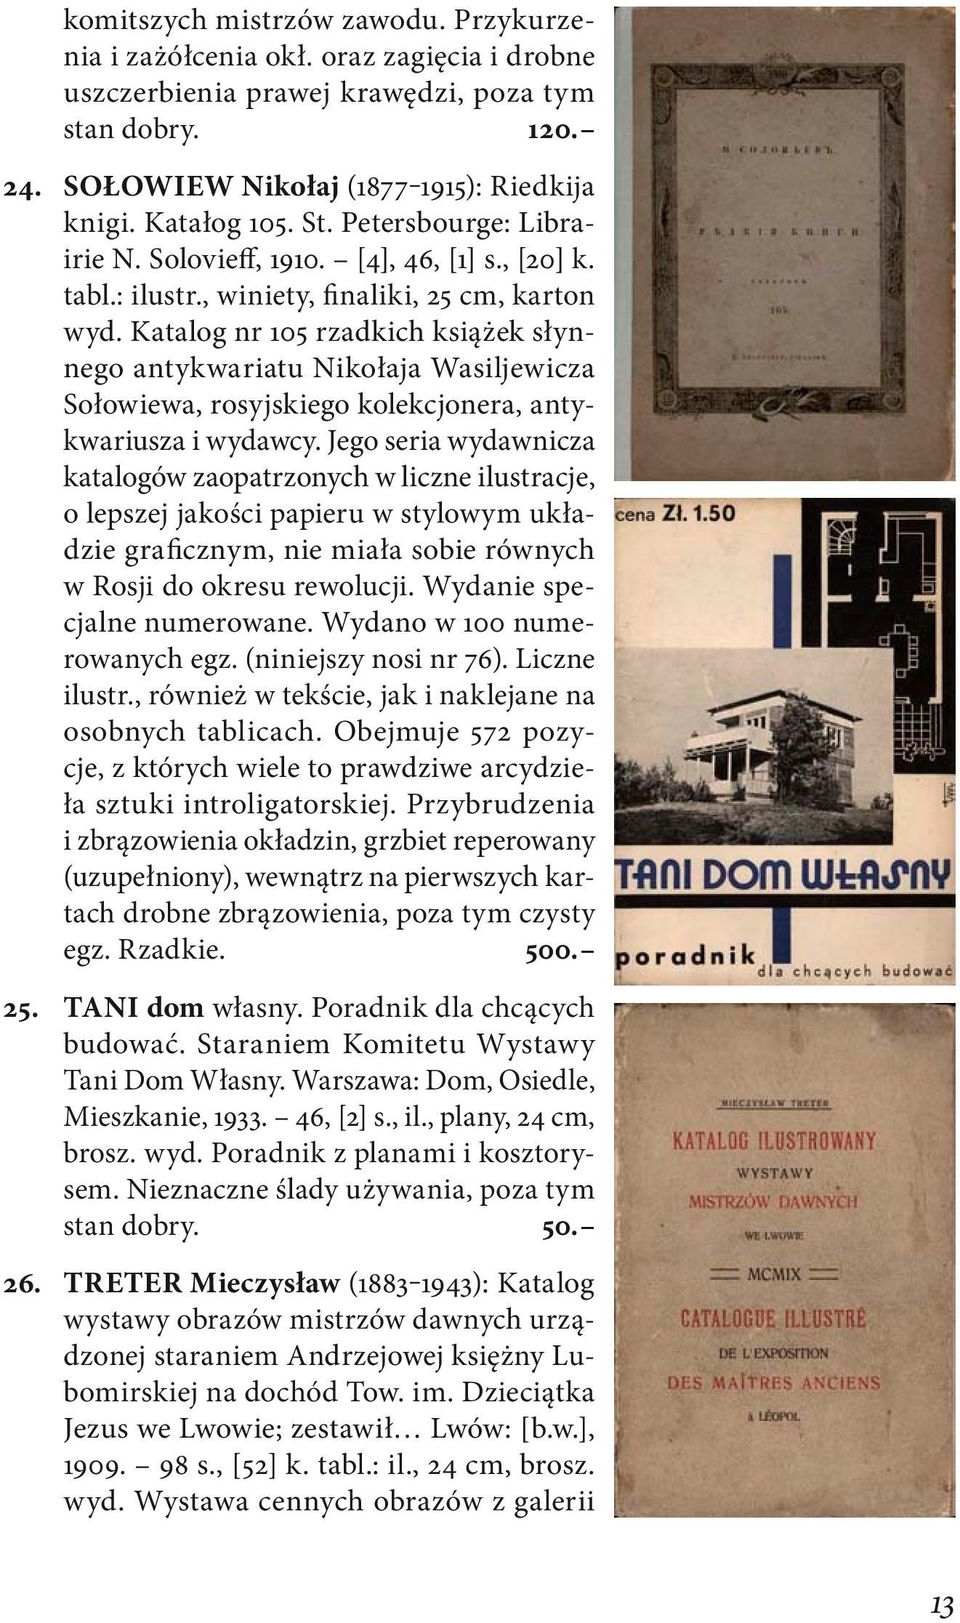 Katalog nr 105 rzadkich książek słynnego antykwariatu Nikołaja Wasiljewicza Sołowiewa, rosyjskiego kolekcjonera, antykwariusza i wydawcy.